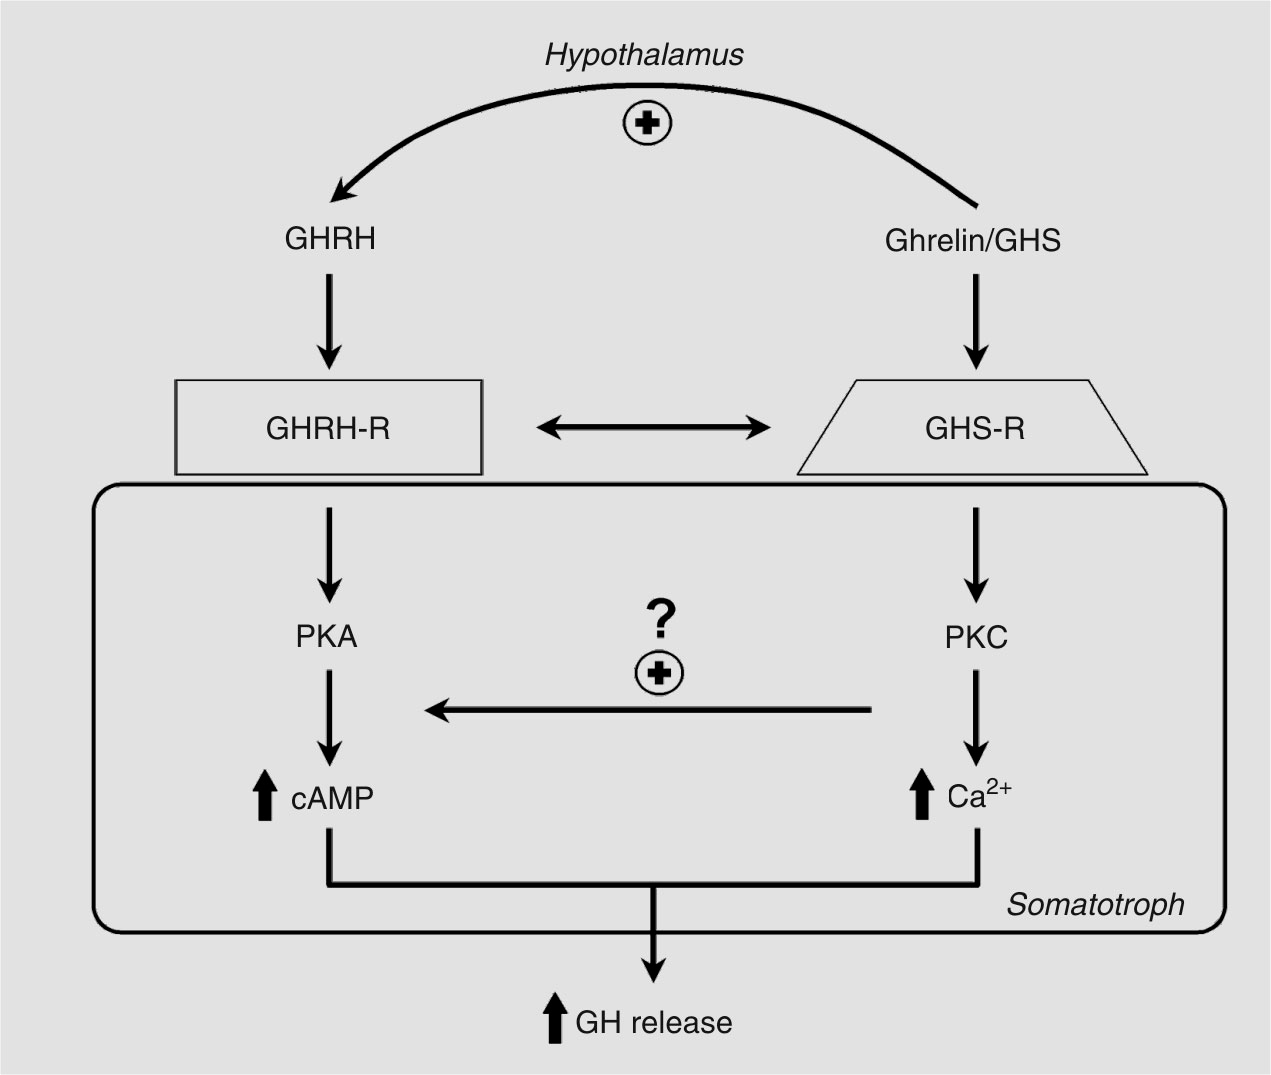 GHS frisetter veksthormon ved å binde seg til veksthormon frisettende-reseptor (GHS-R). GHS-R er blant annet lokalisert i hypotalamus (15). GHS og GHRH har vist å ha synergistisk effekt med hverandre.